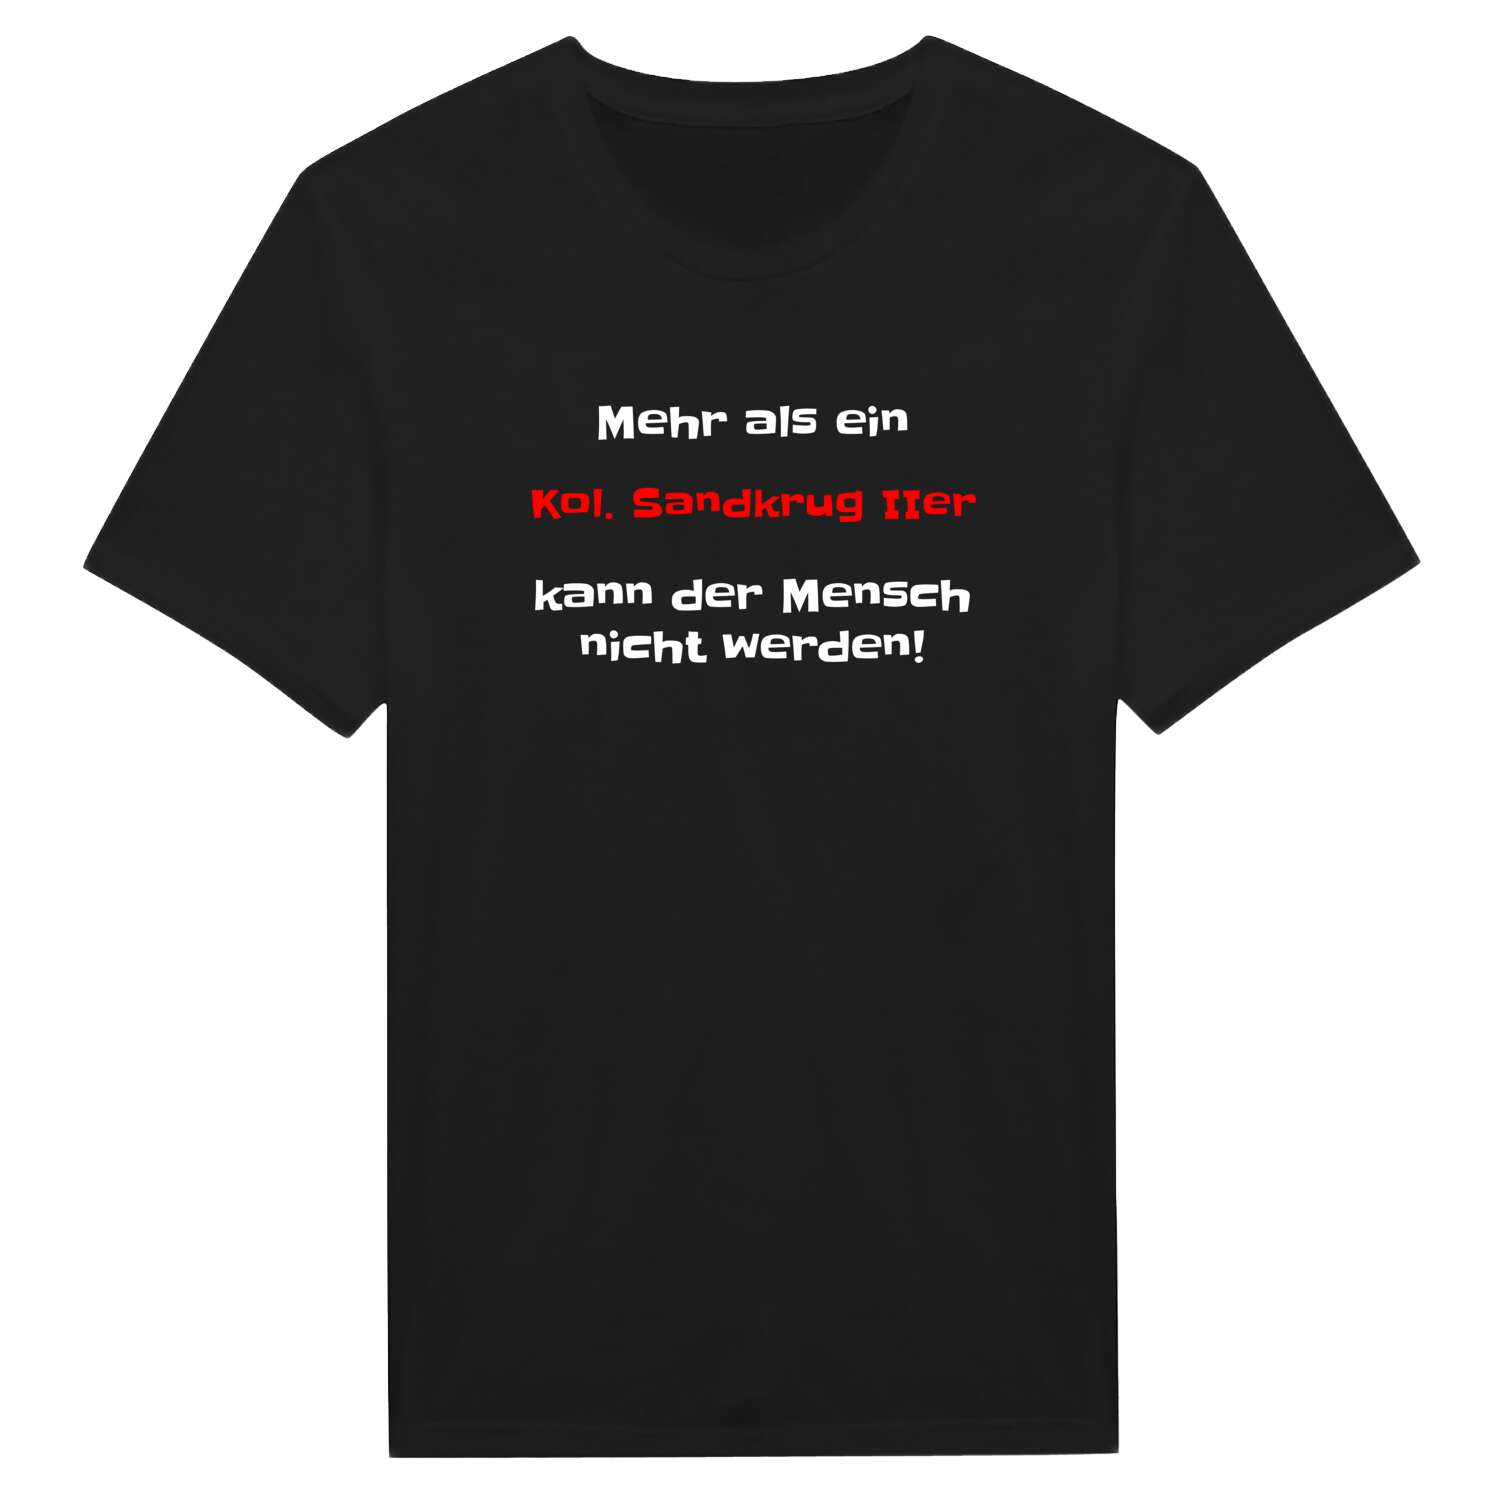 Kol. Sandkrug II T-Shirt »Mehr als ein«